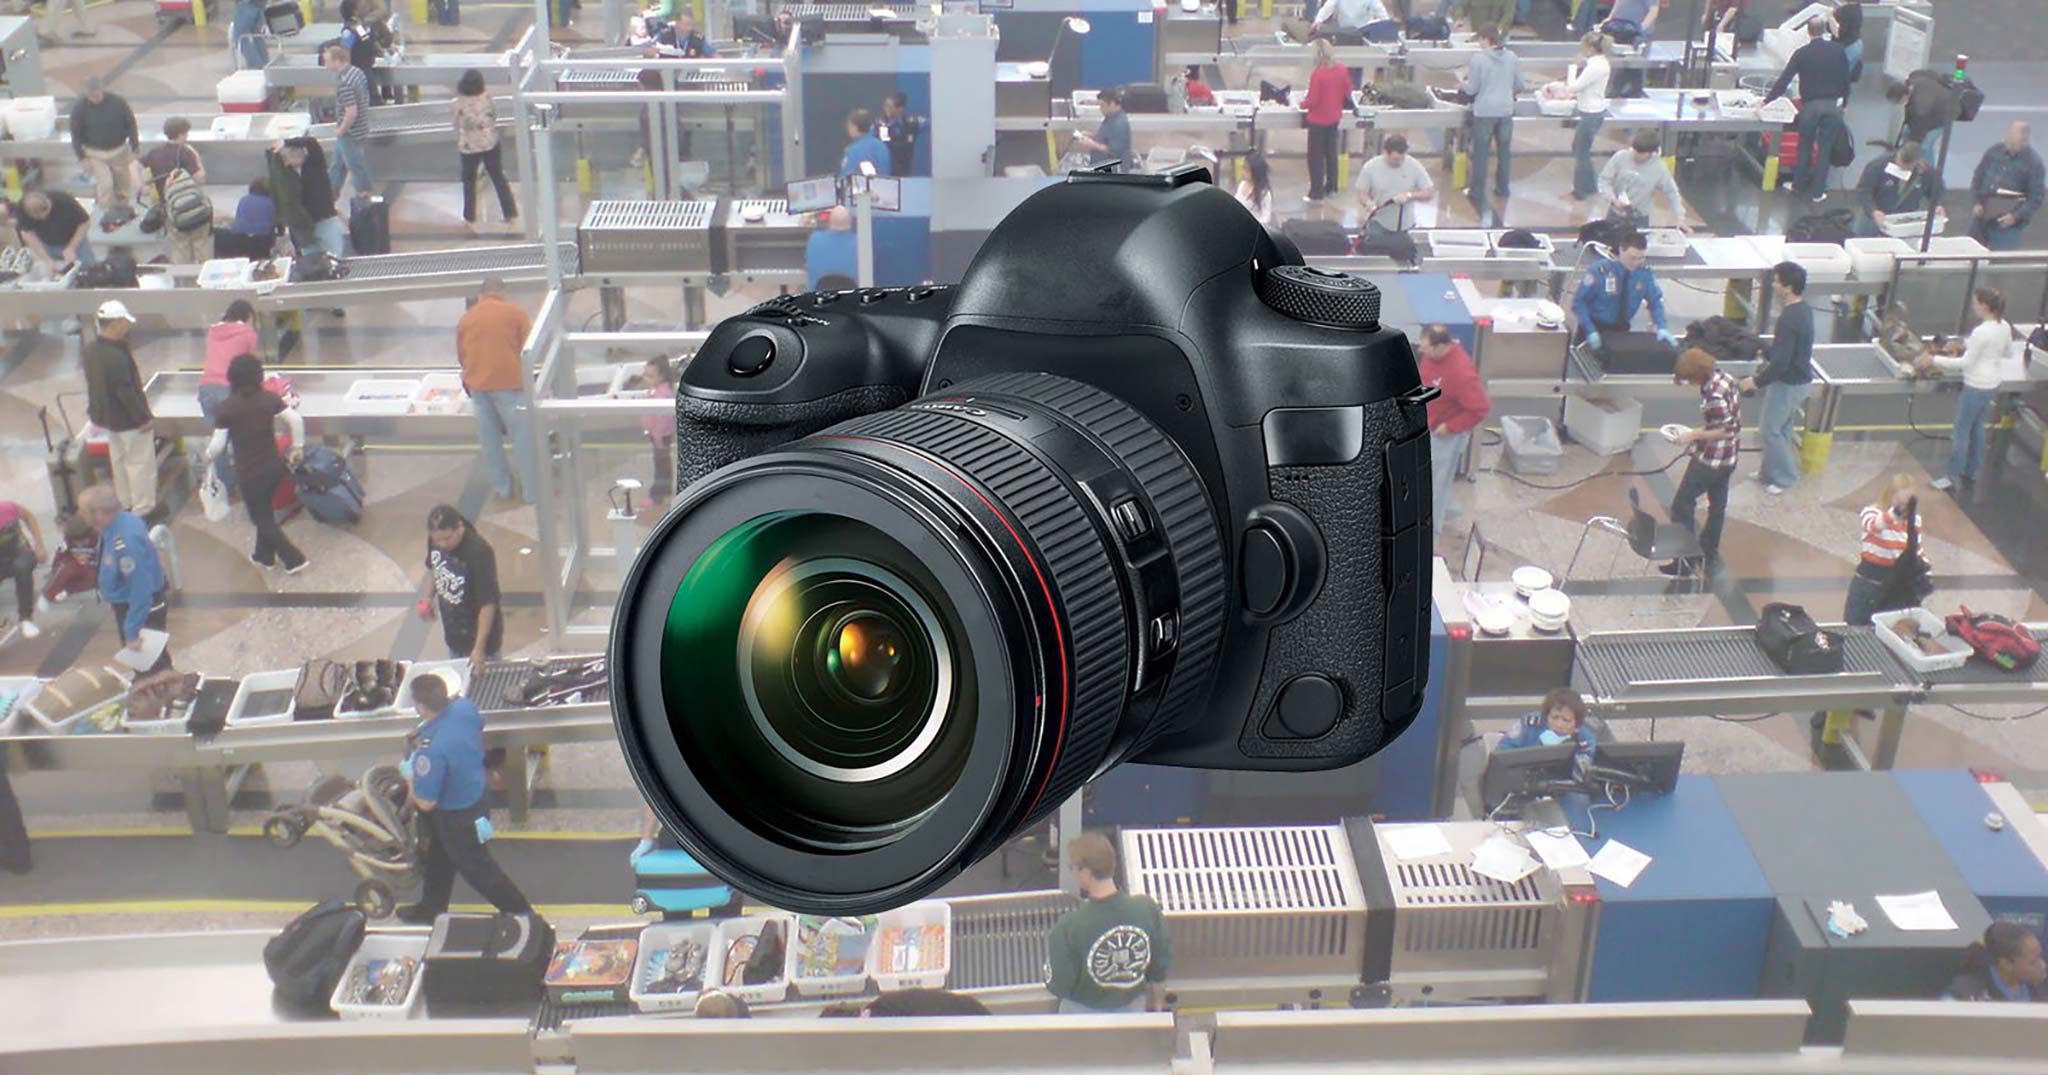 Cơ quan An ninh Vận chuyển Mỹ yêu cầu thiết bị máy ảnh phải để riêng khi kiểm tra an ninh sân bay